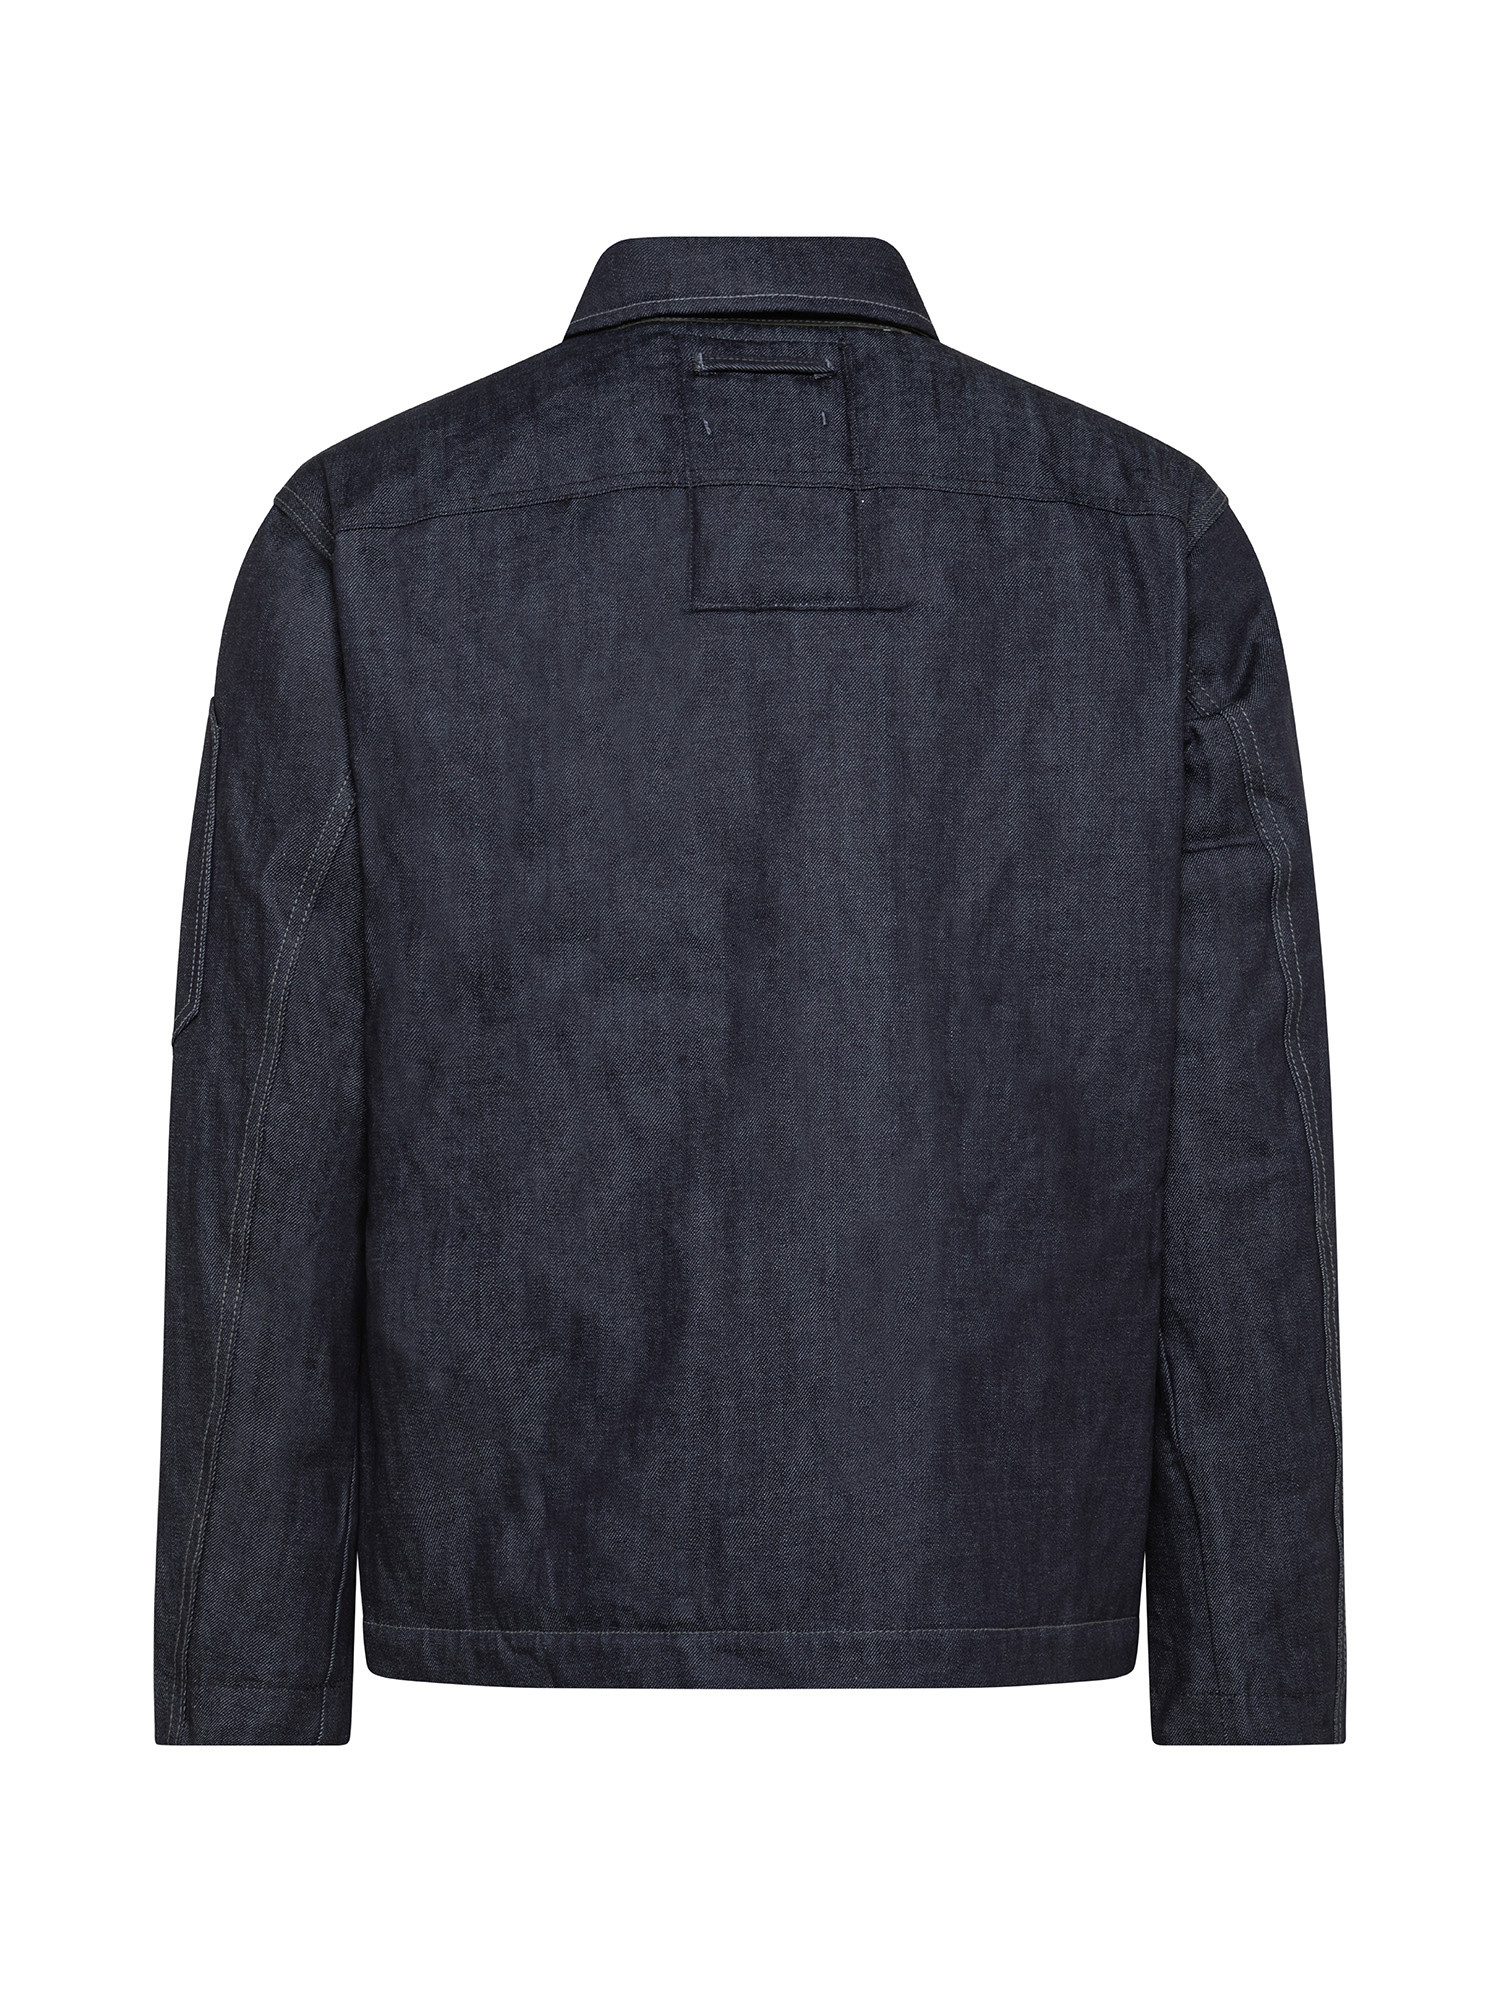 G-Star - Padded denim jacket, Denim, large image number 1